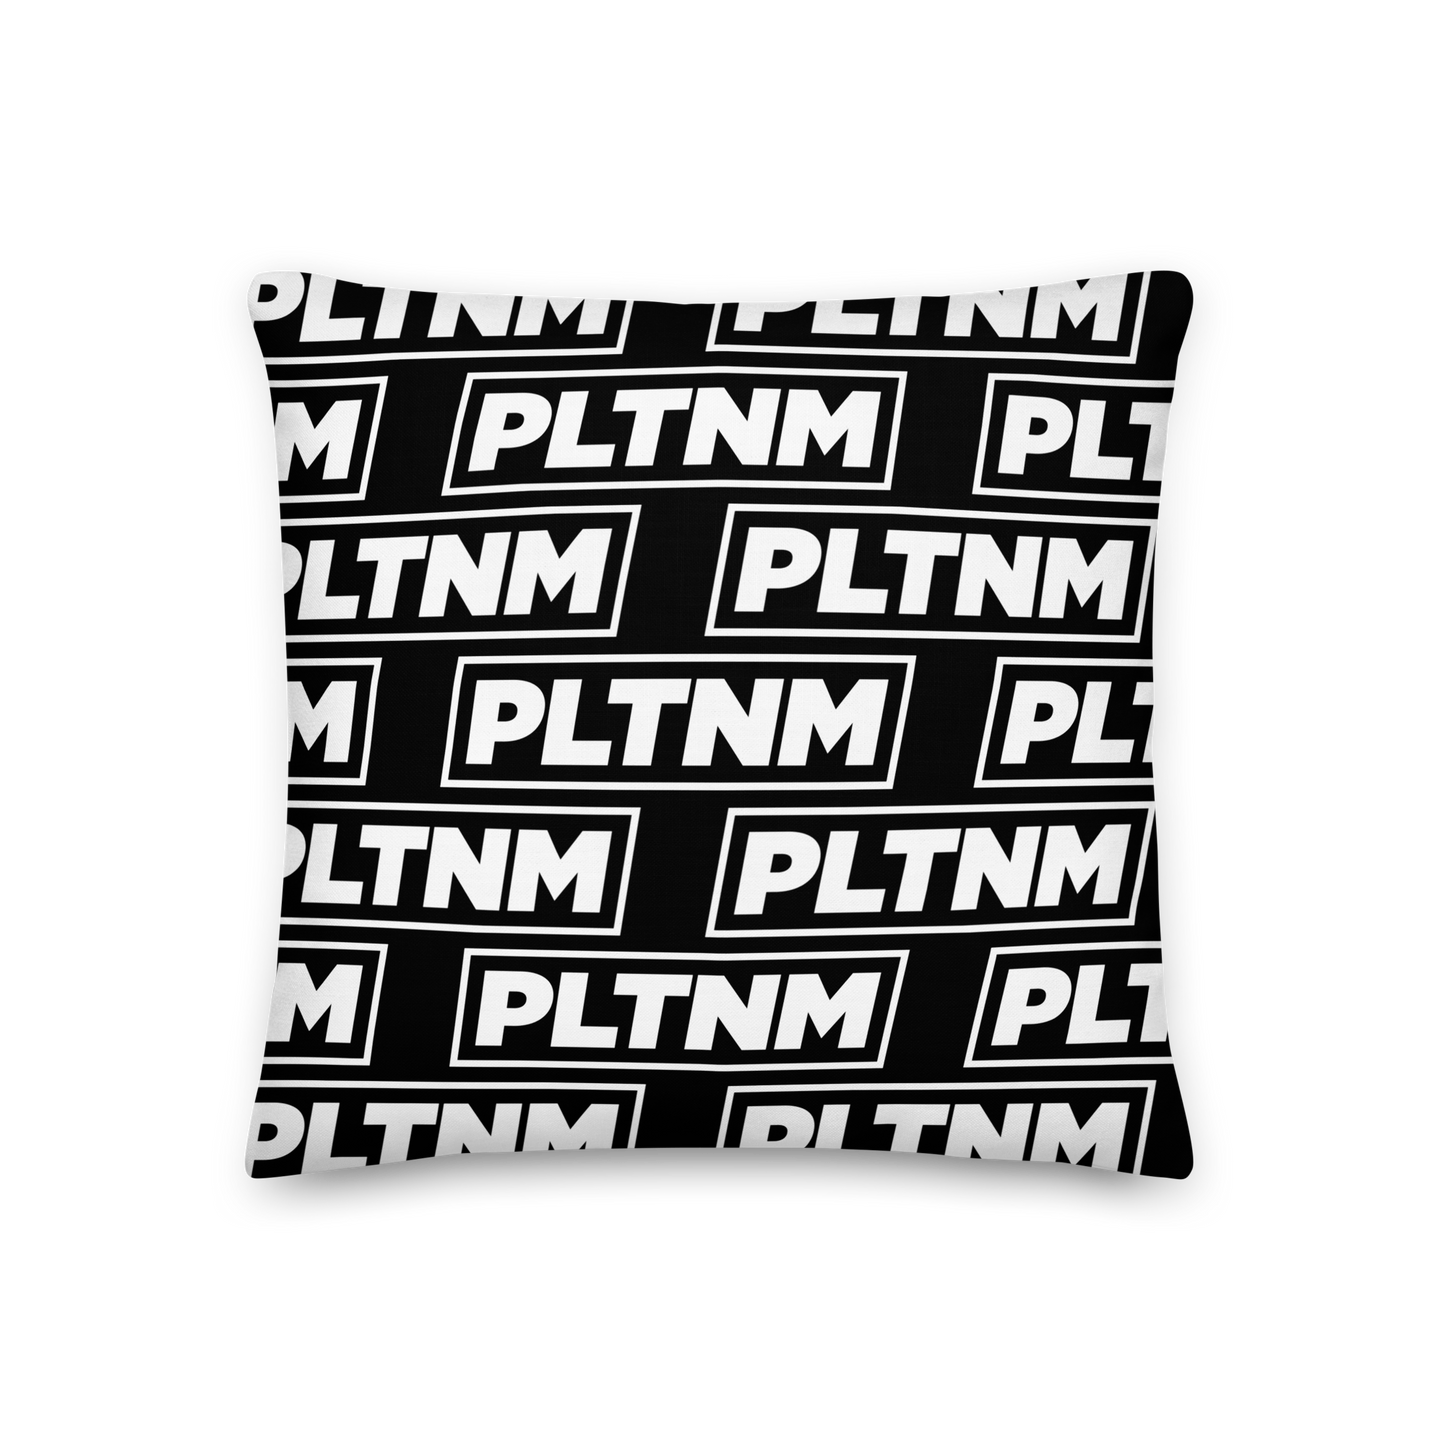 PLTNM Premium Pillow